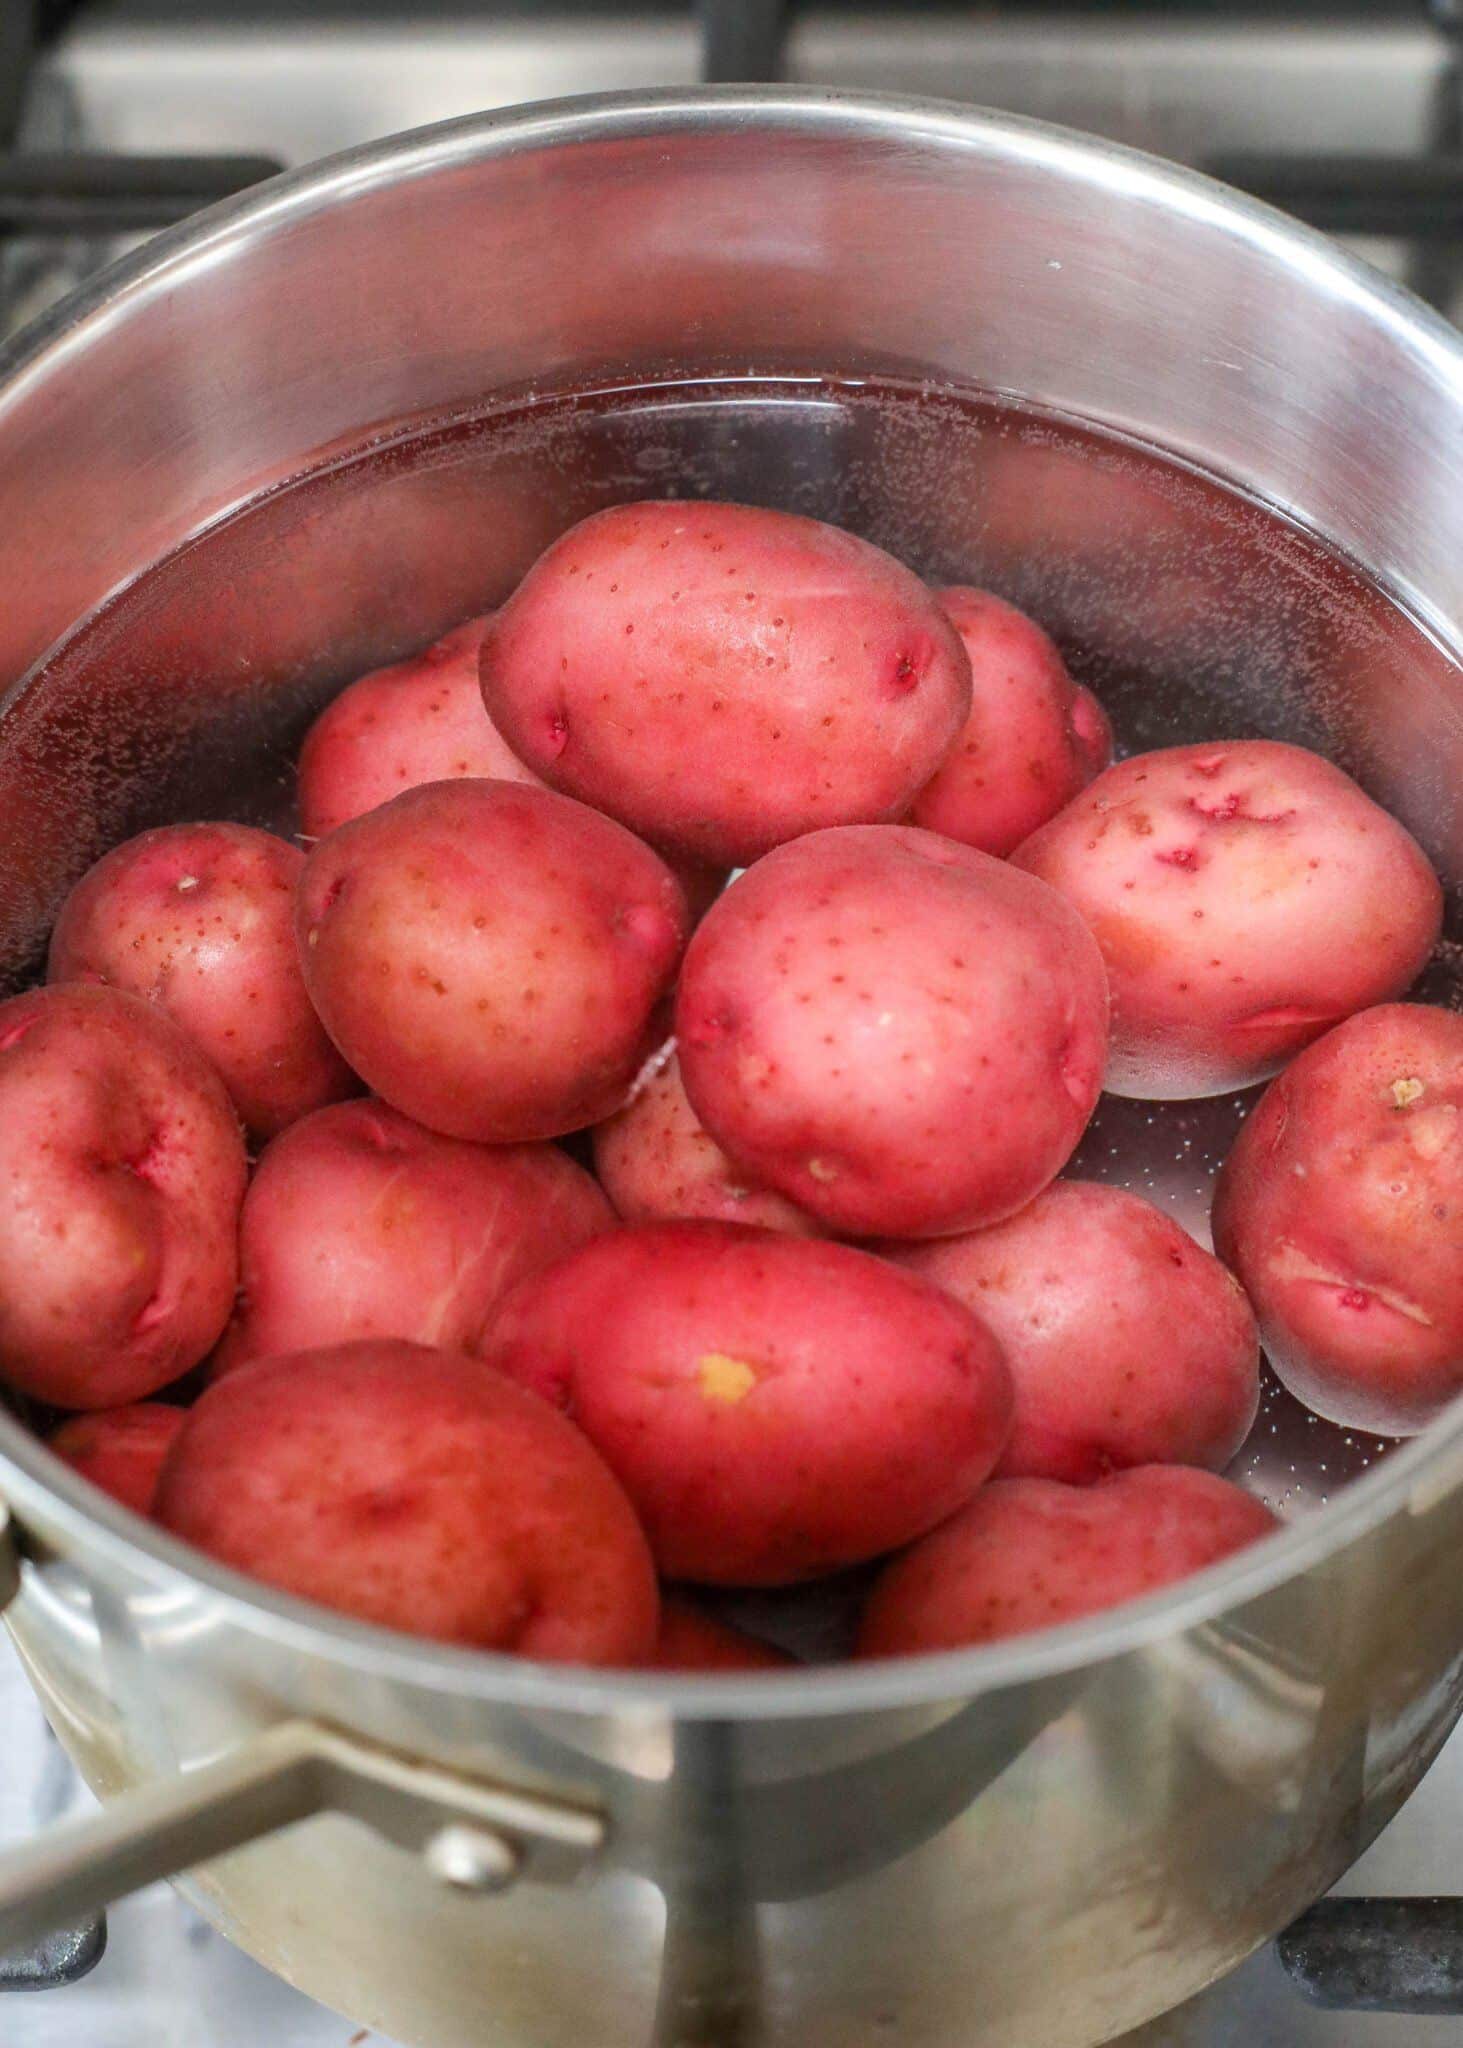 Round red Potatoes